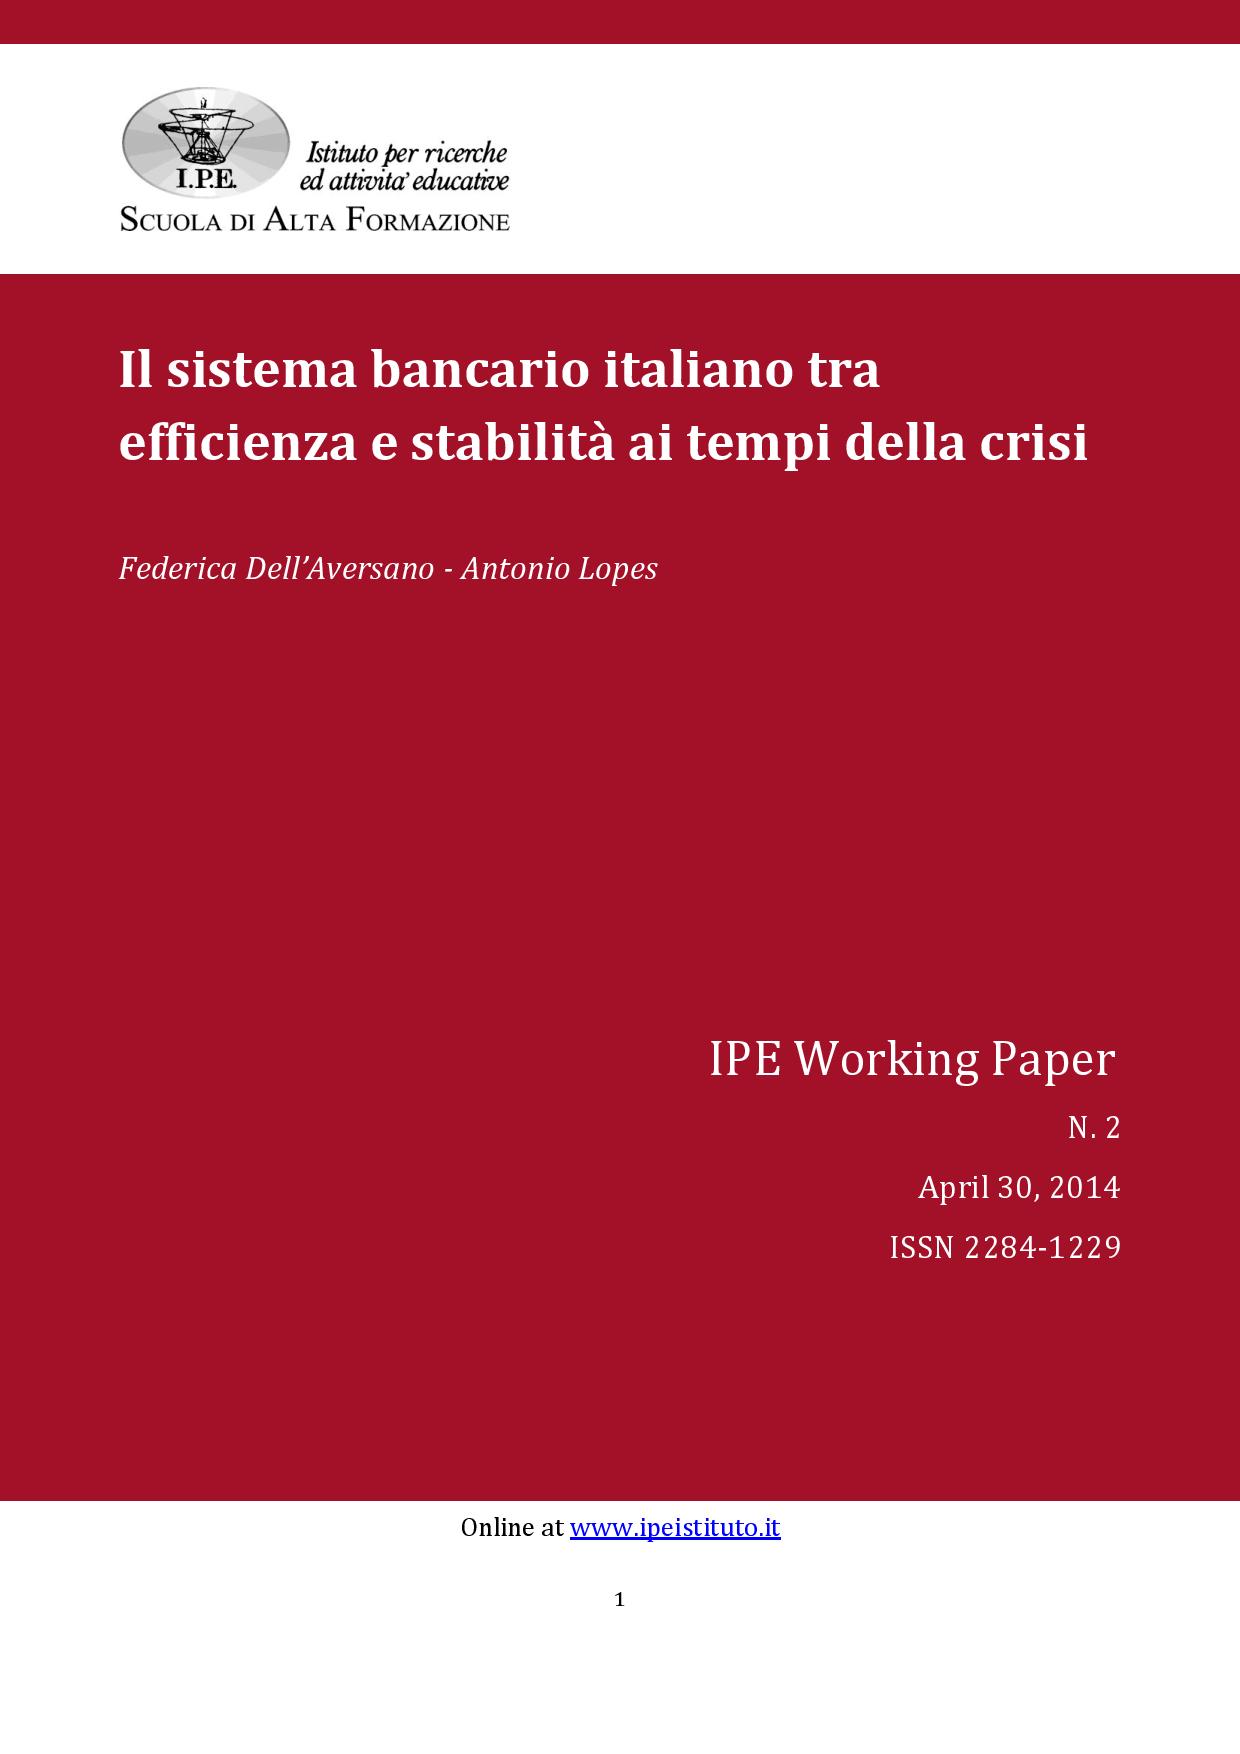 IPE Working Paper N.2/2014